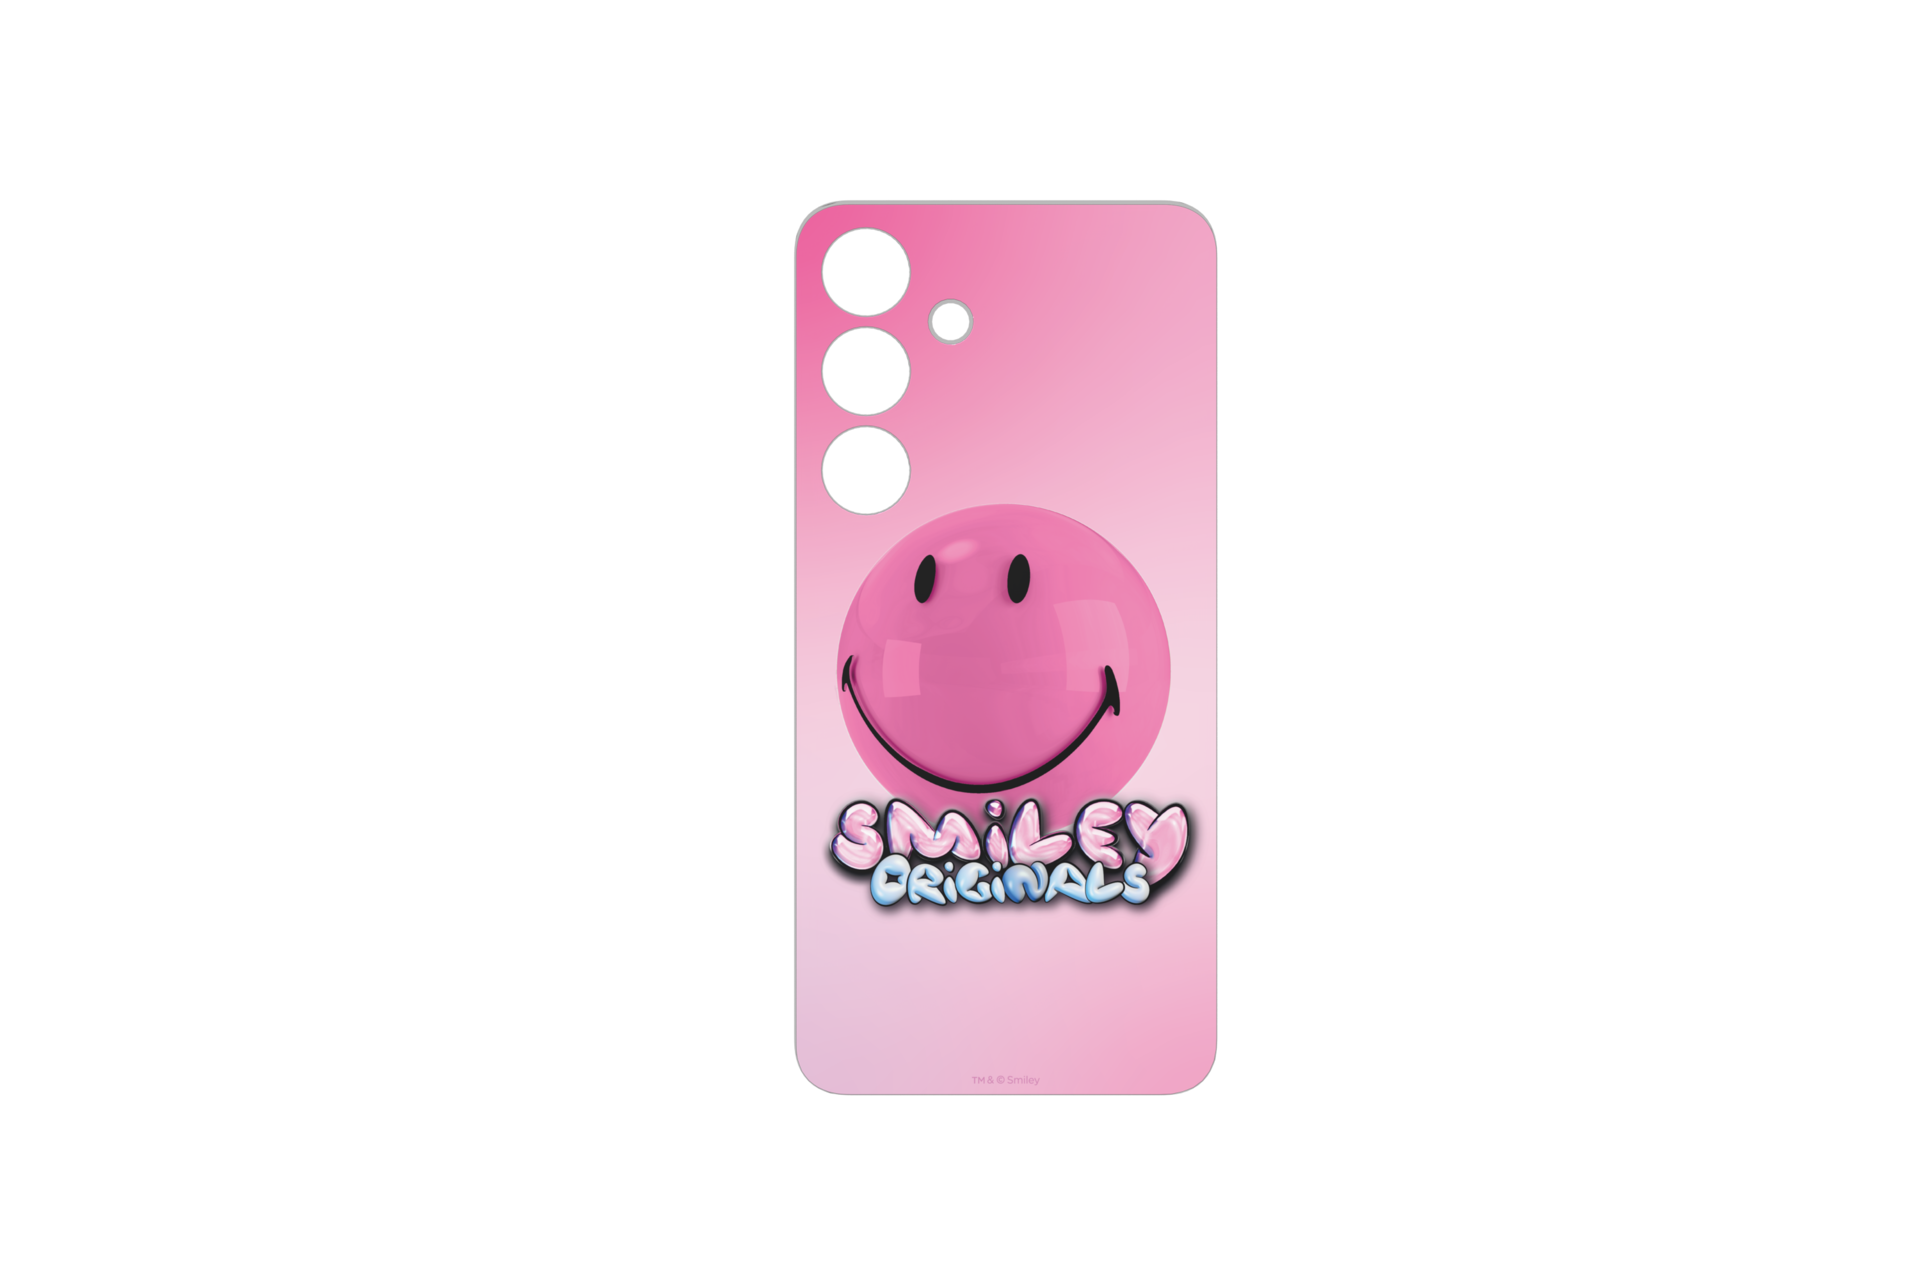 Happy Smiley Face - Funda para teléfono, color morado